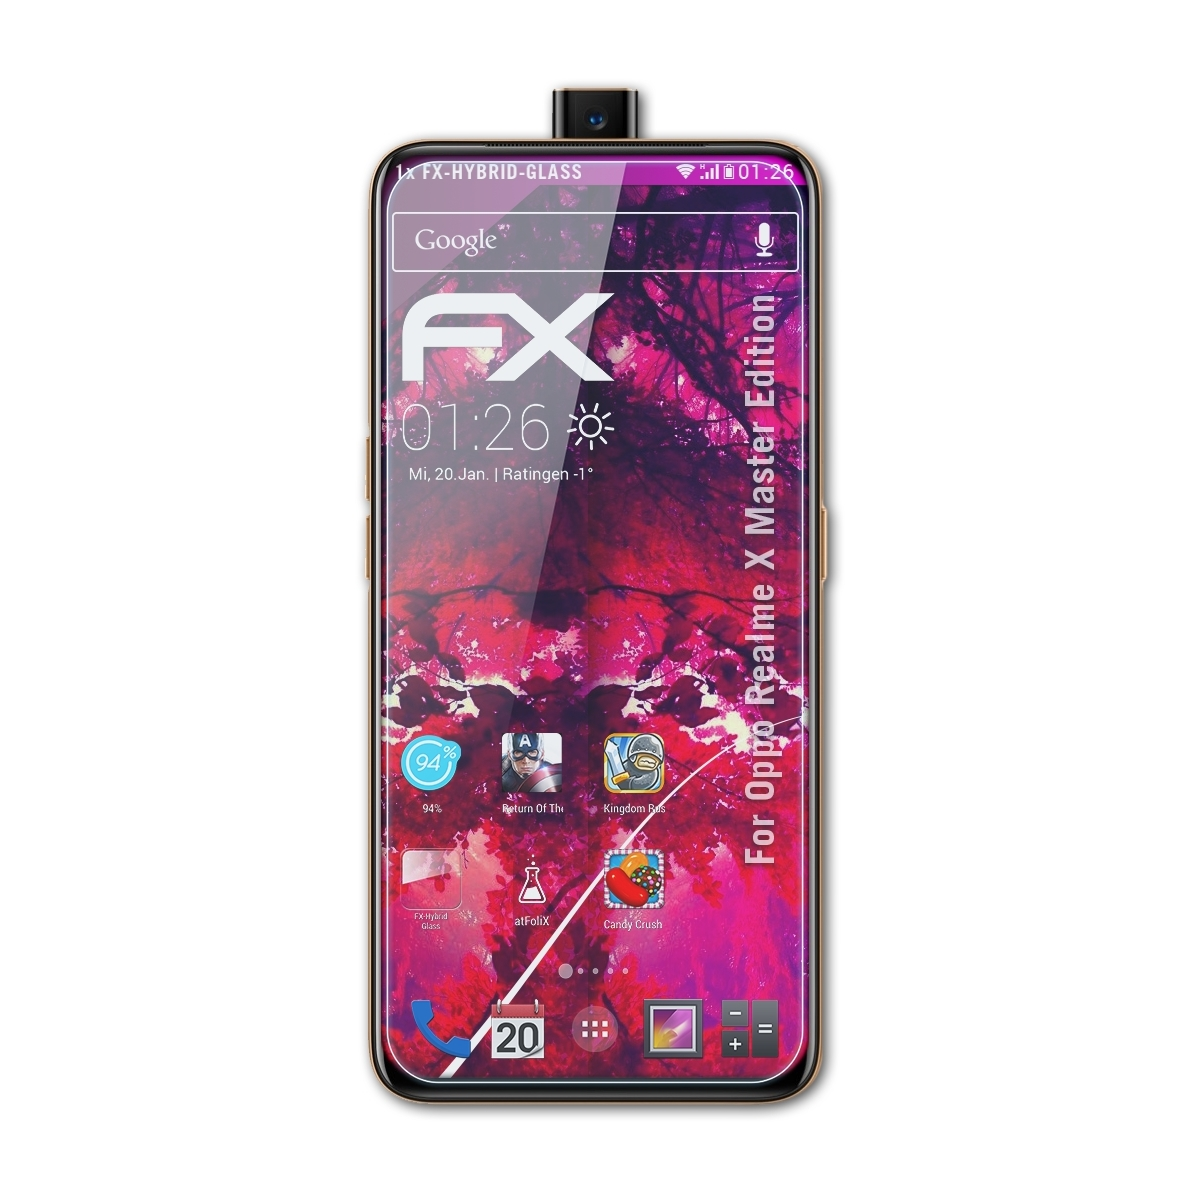 ATFOLIX FX-Hybrid-Glass Schutzglas(für Edition) X Master Oppo Realme